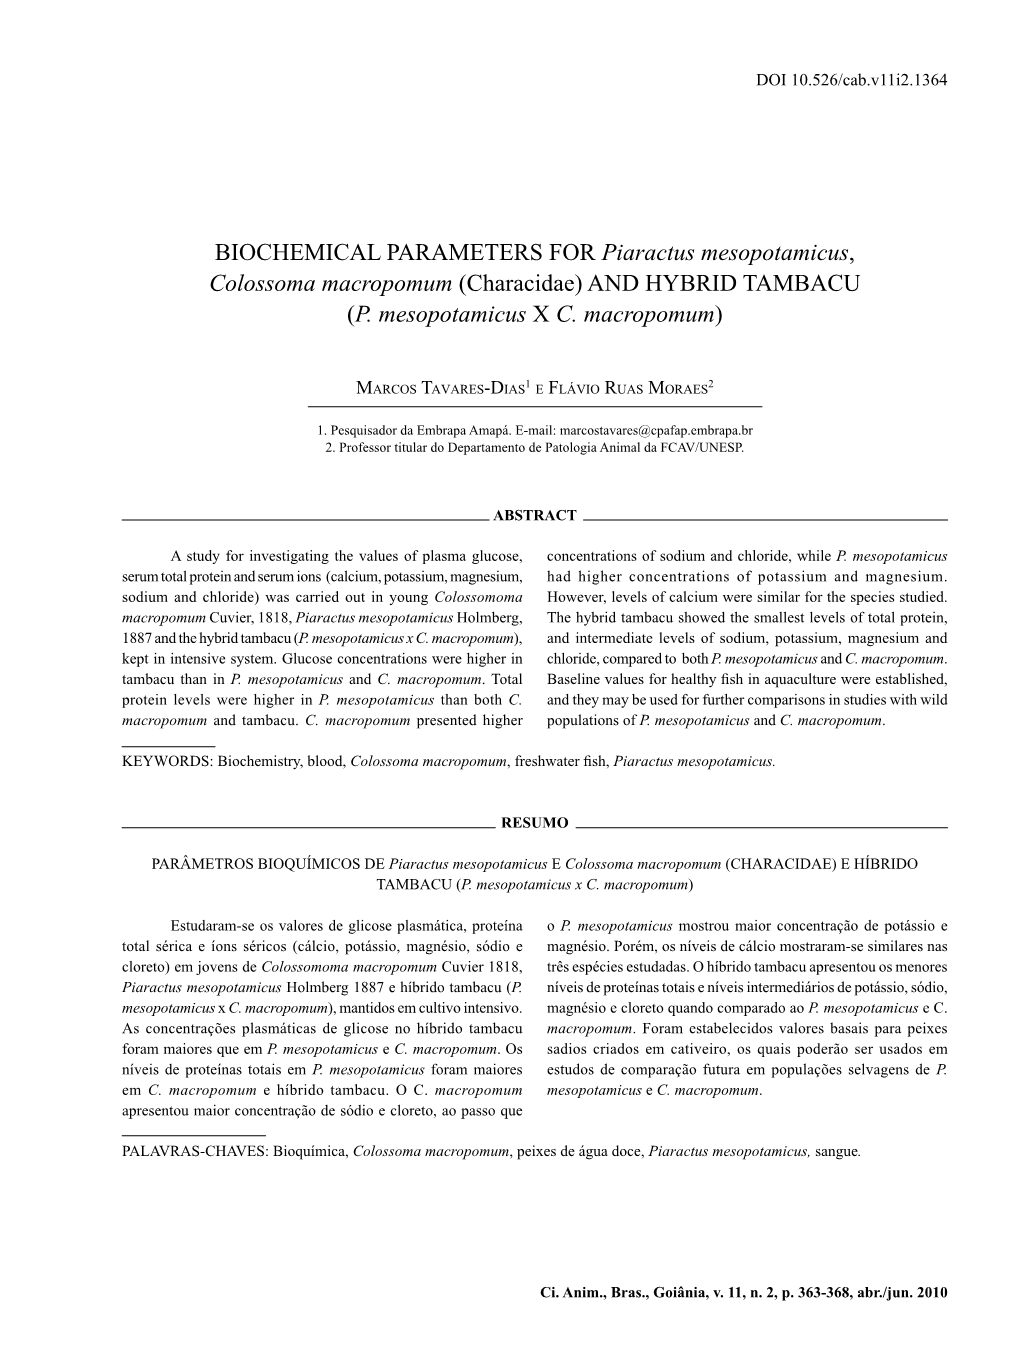 BIOCHEMICAL PARAMETERS for Piaractus Mesopotamicus, Colossoma Macropomum (Characidae) and HYBRID TAMBACU (P. Mesopotamicus X C. Macropomum)